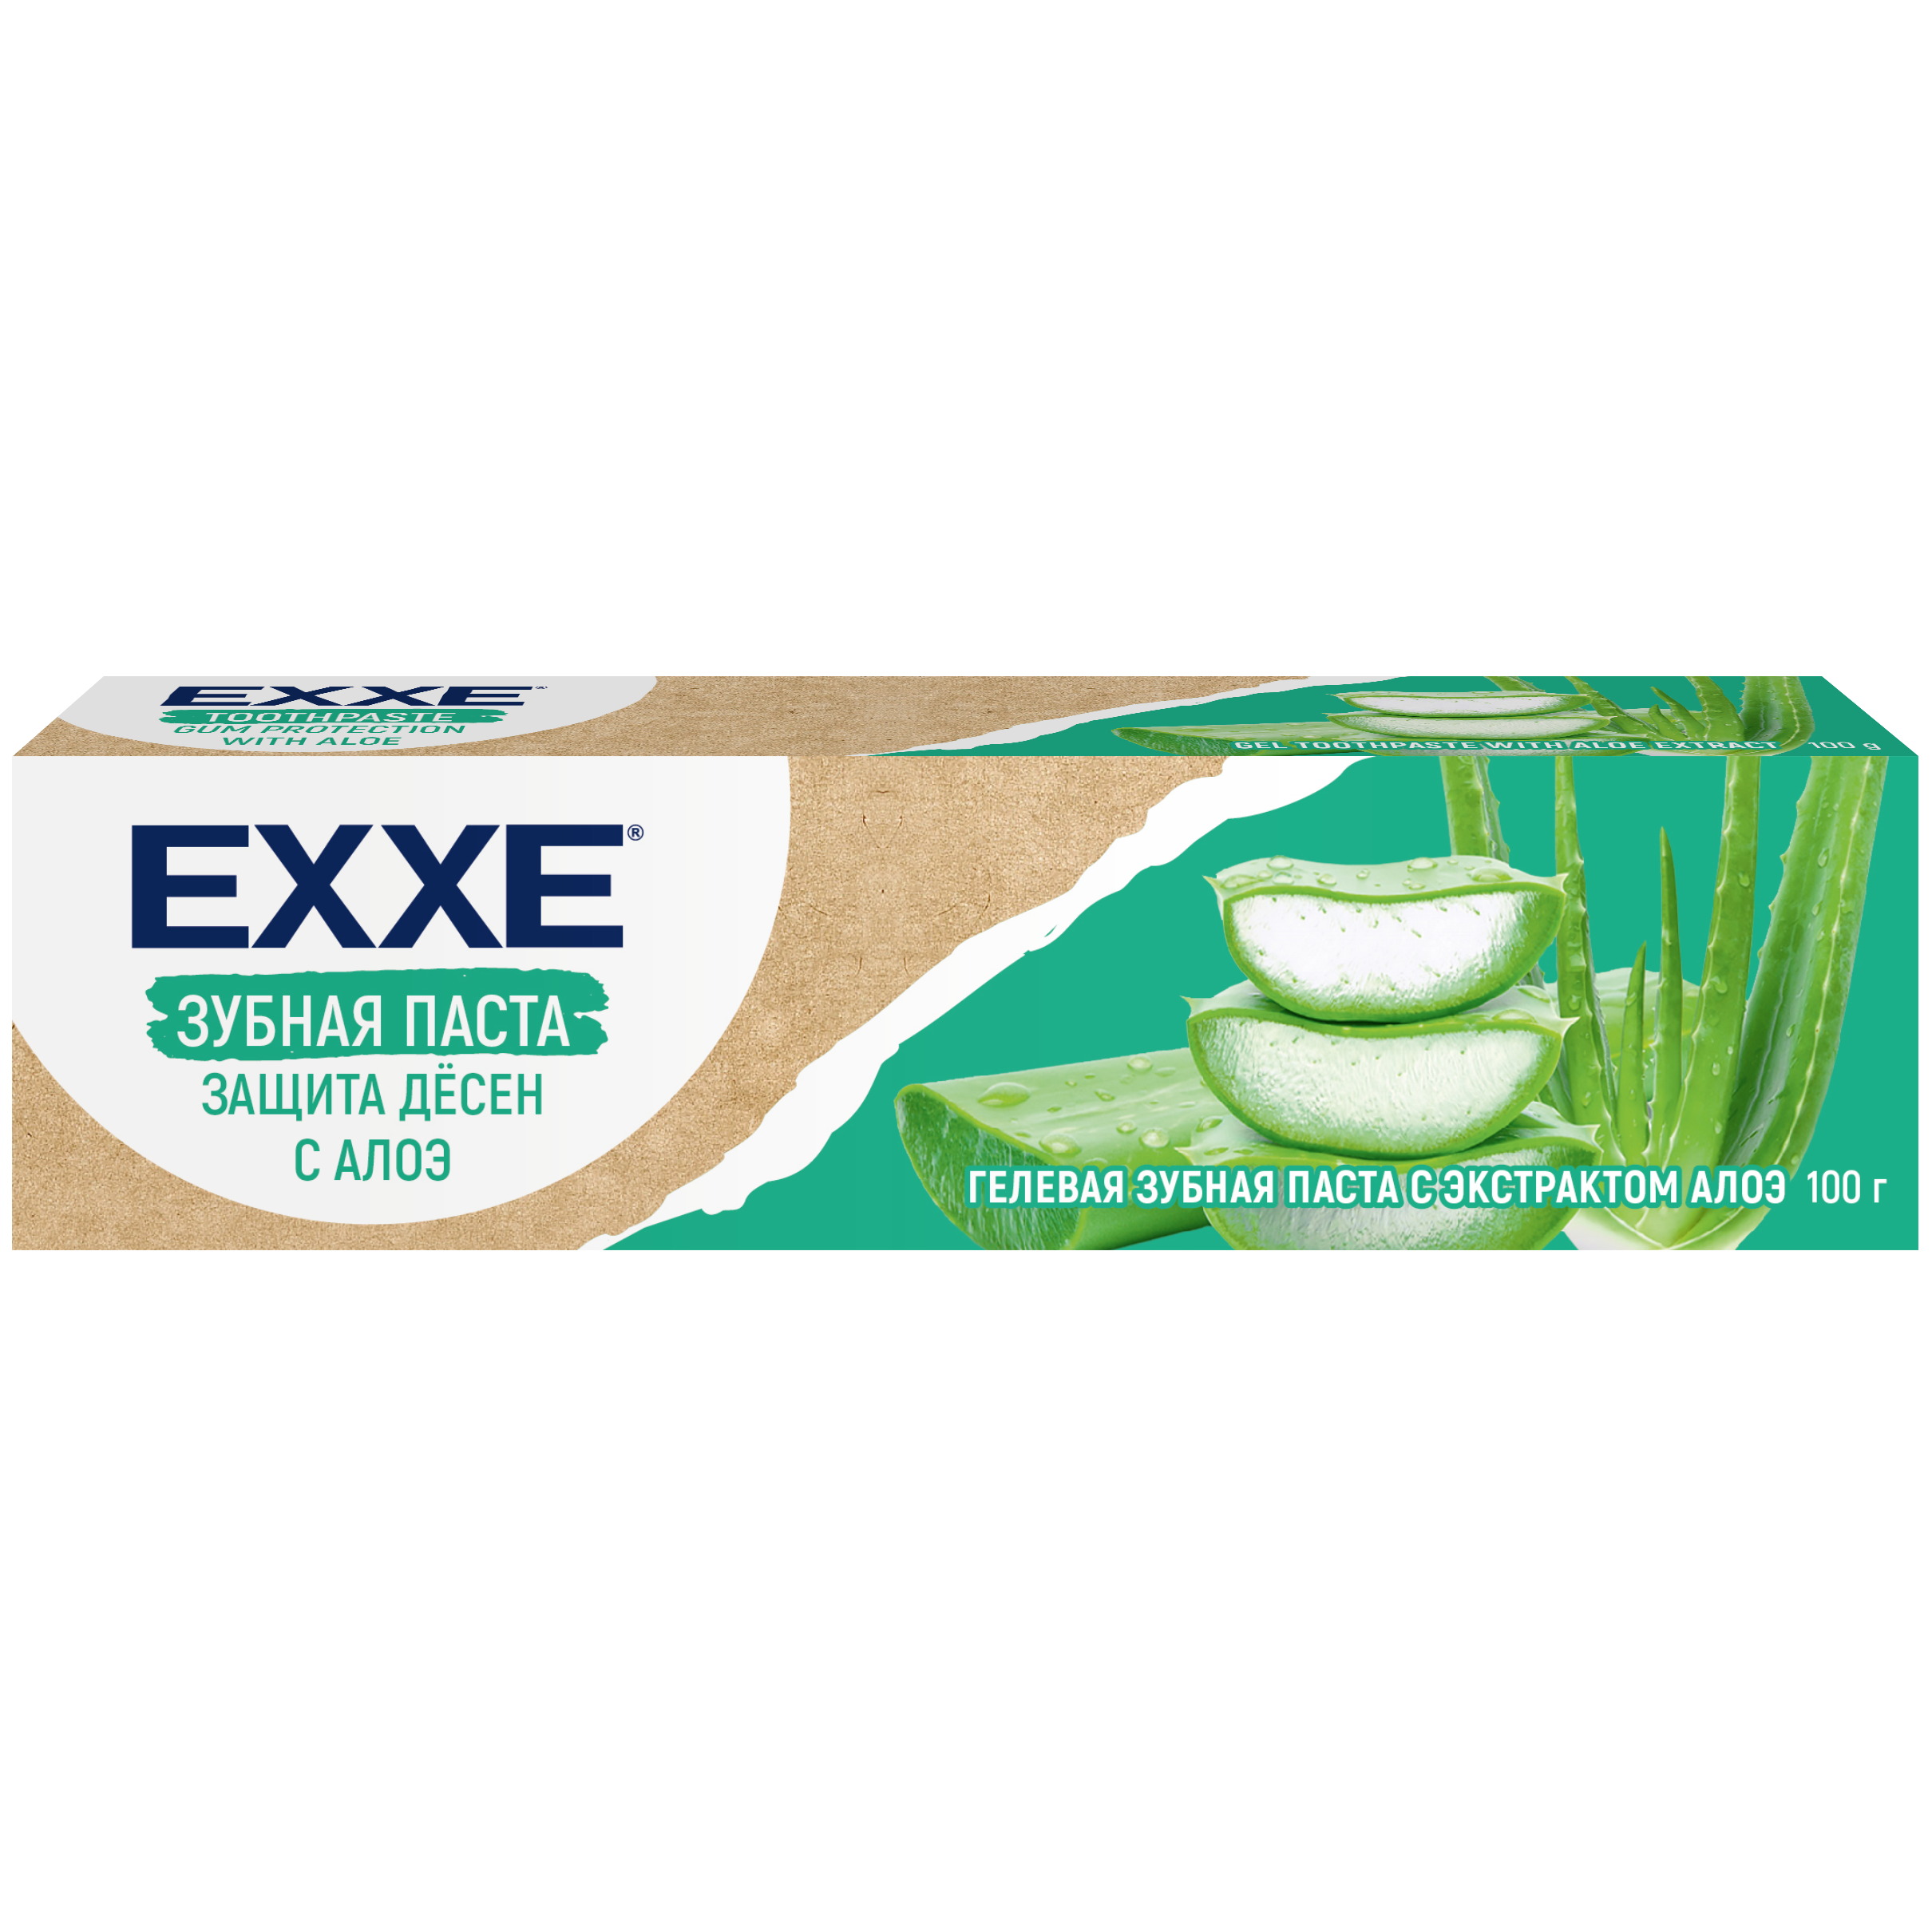 Зубная паста EXXE Защита дёсен с Алоэ, 100 г зубная паста защита дёсен absolut pro system gum protection110 г 2 шт